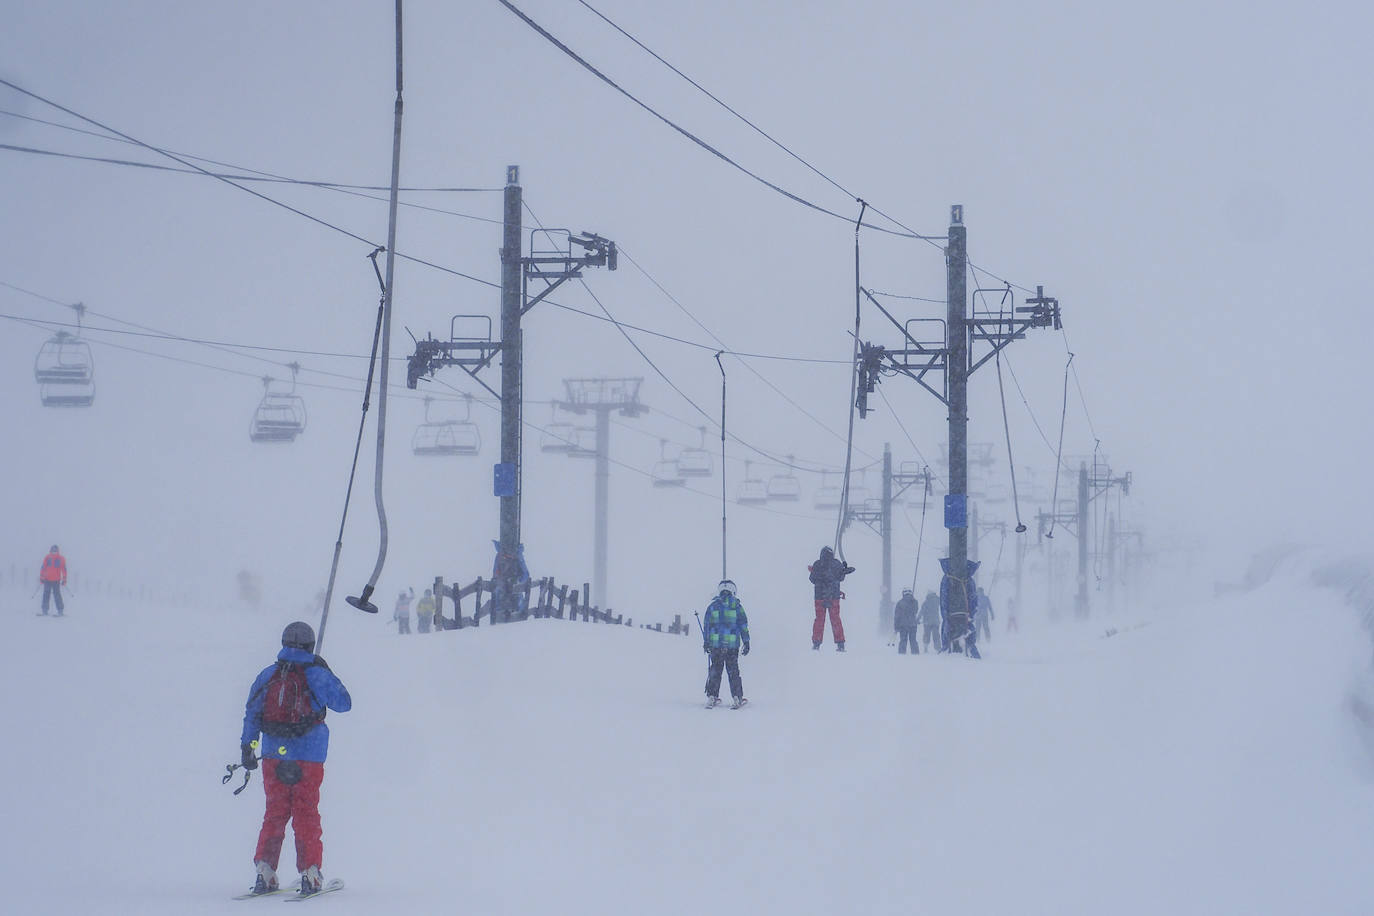 La estación de esquí Alto Campoo ha inaugurado hoy la temporada 2020/21 con 15 kilómetros esquiables y un aforo de mil usuarios.